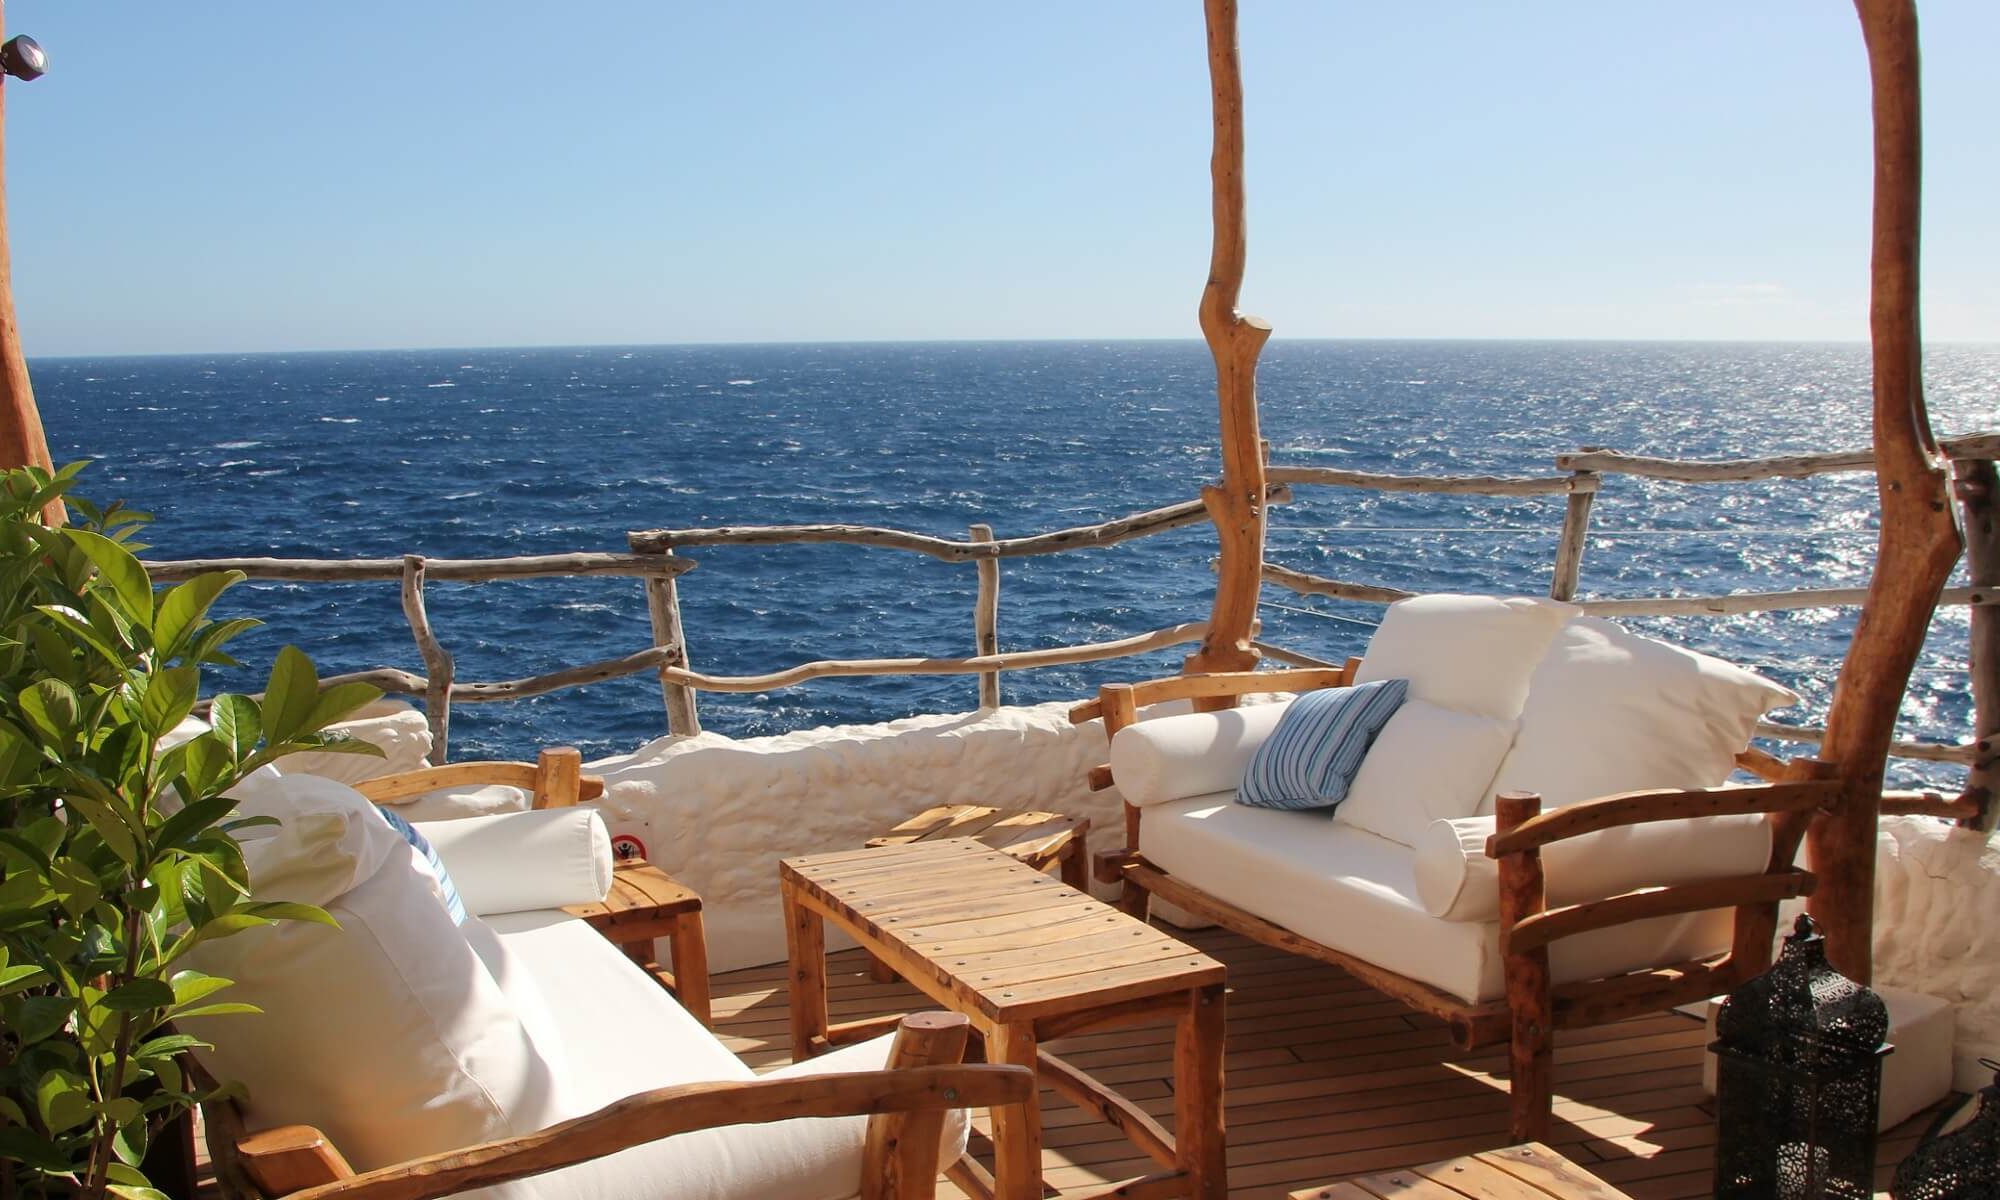 Menorca lädt zum entspannen und genießen ein